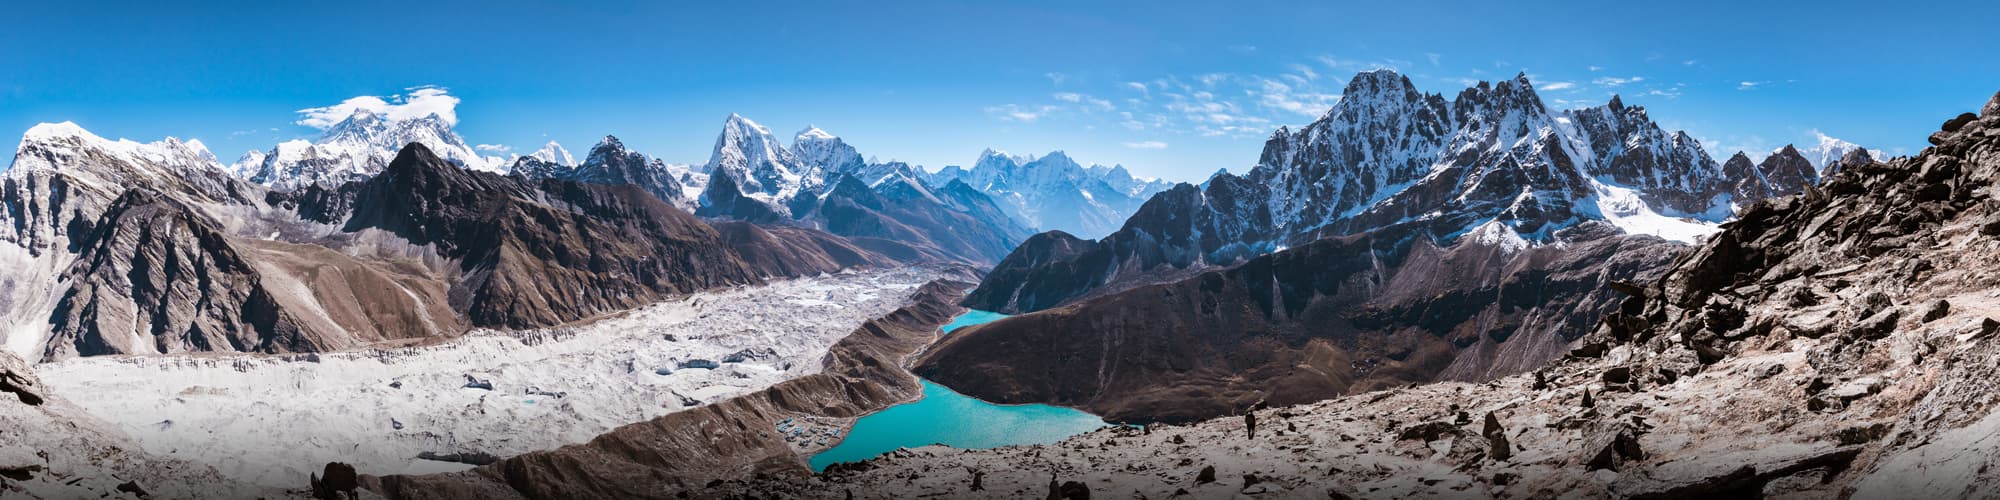 Trek au Népal © Thrithot / Adobe Stock